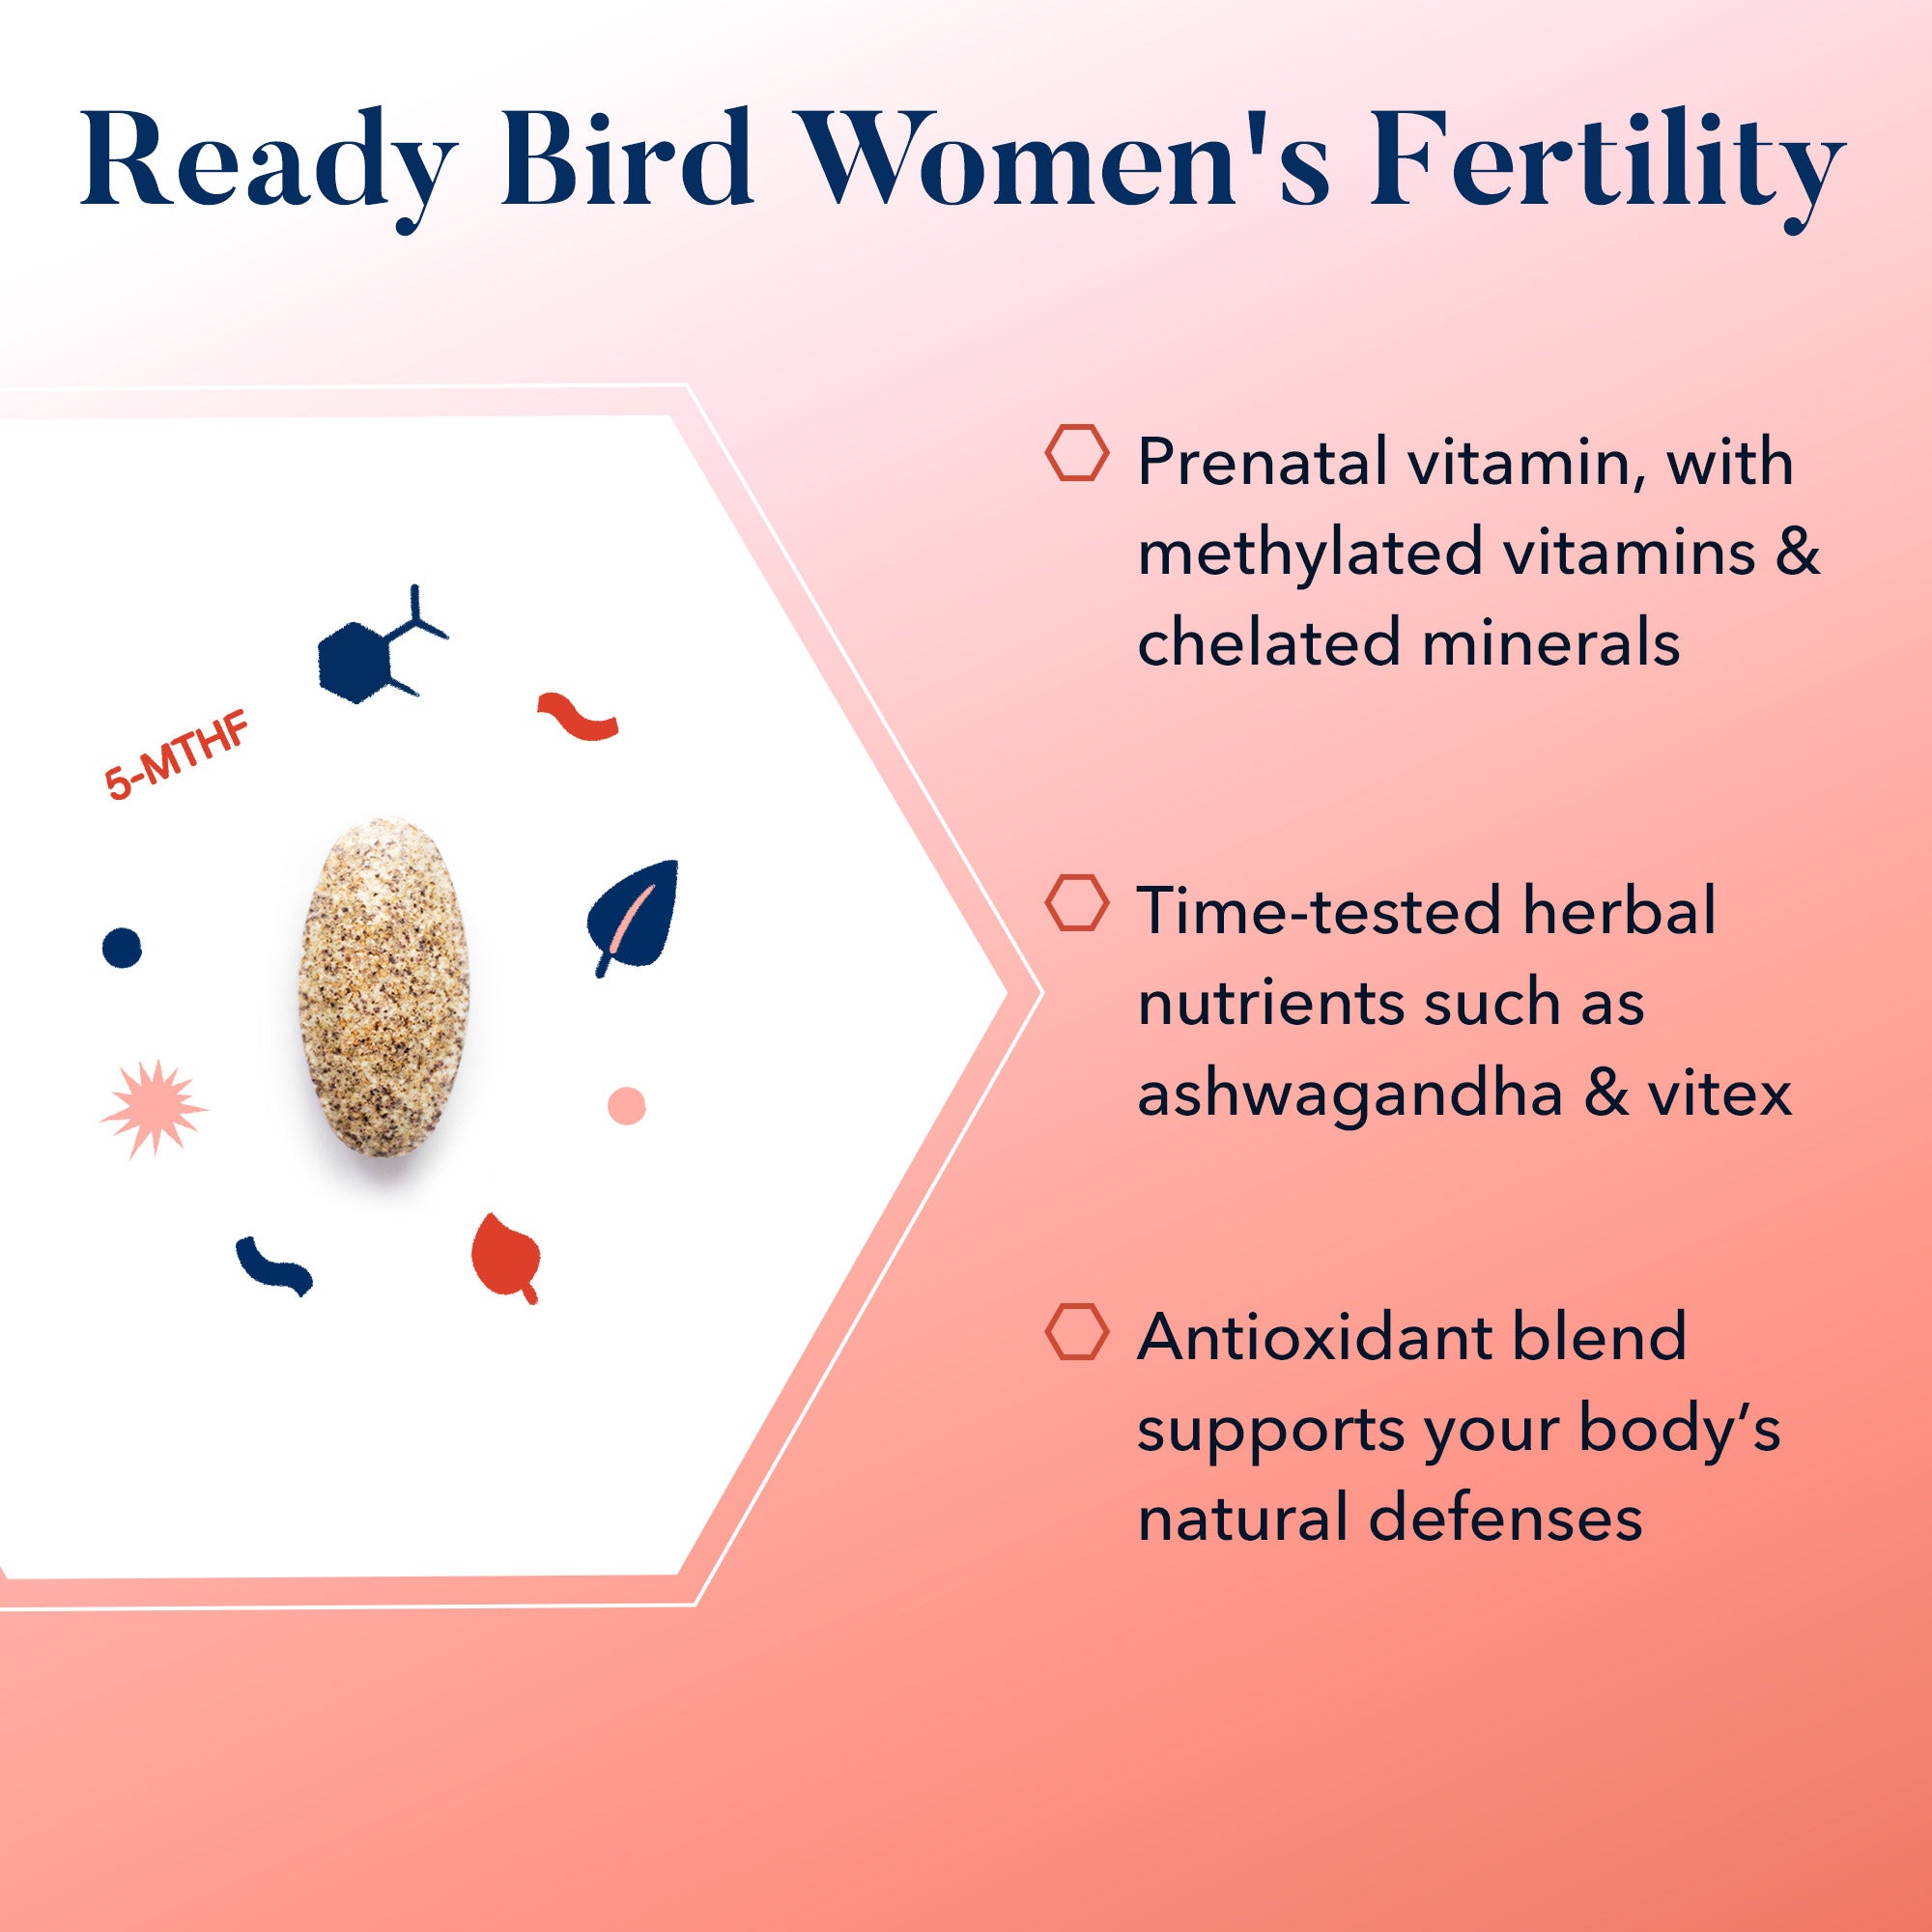 Women's Fertility